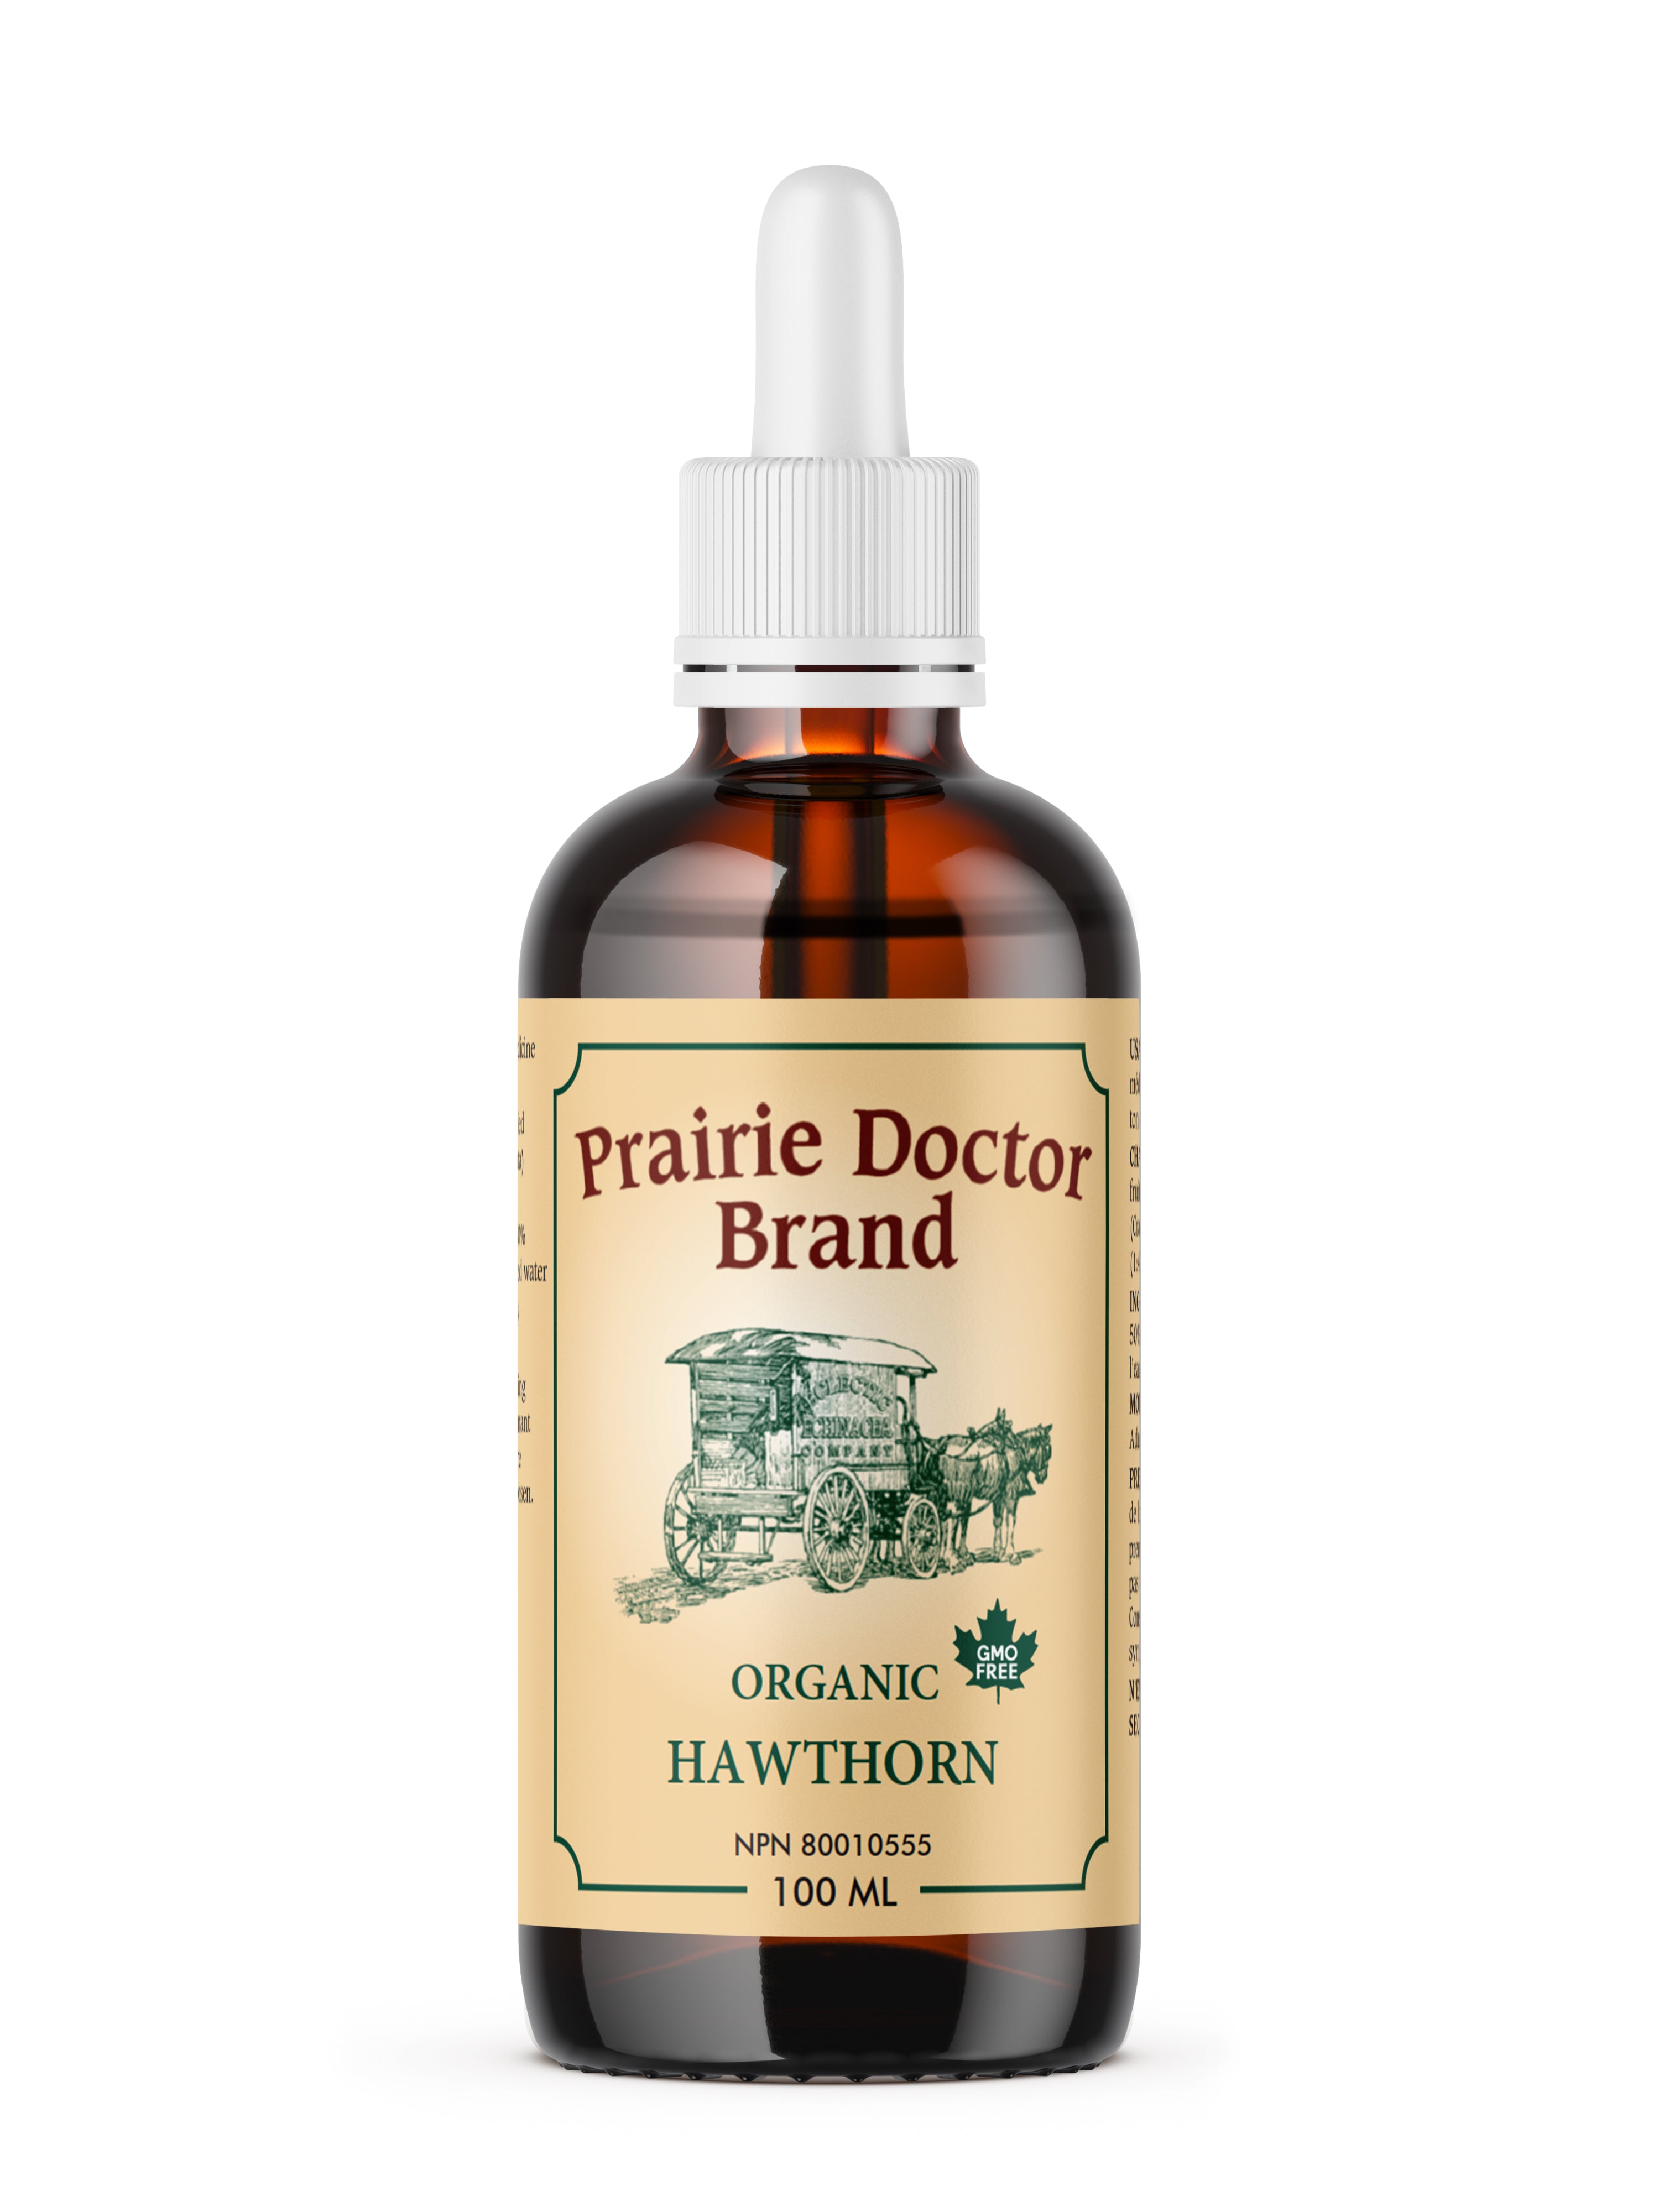 Prairie Doctor Hawthorn (100ml) - Lifestyle Markets